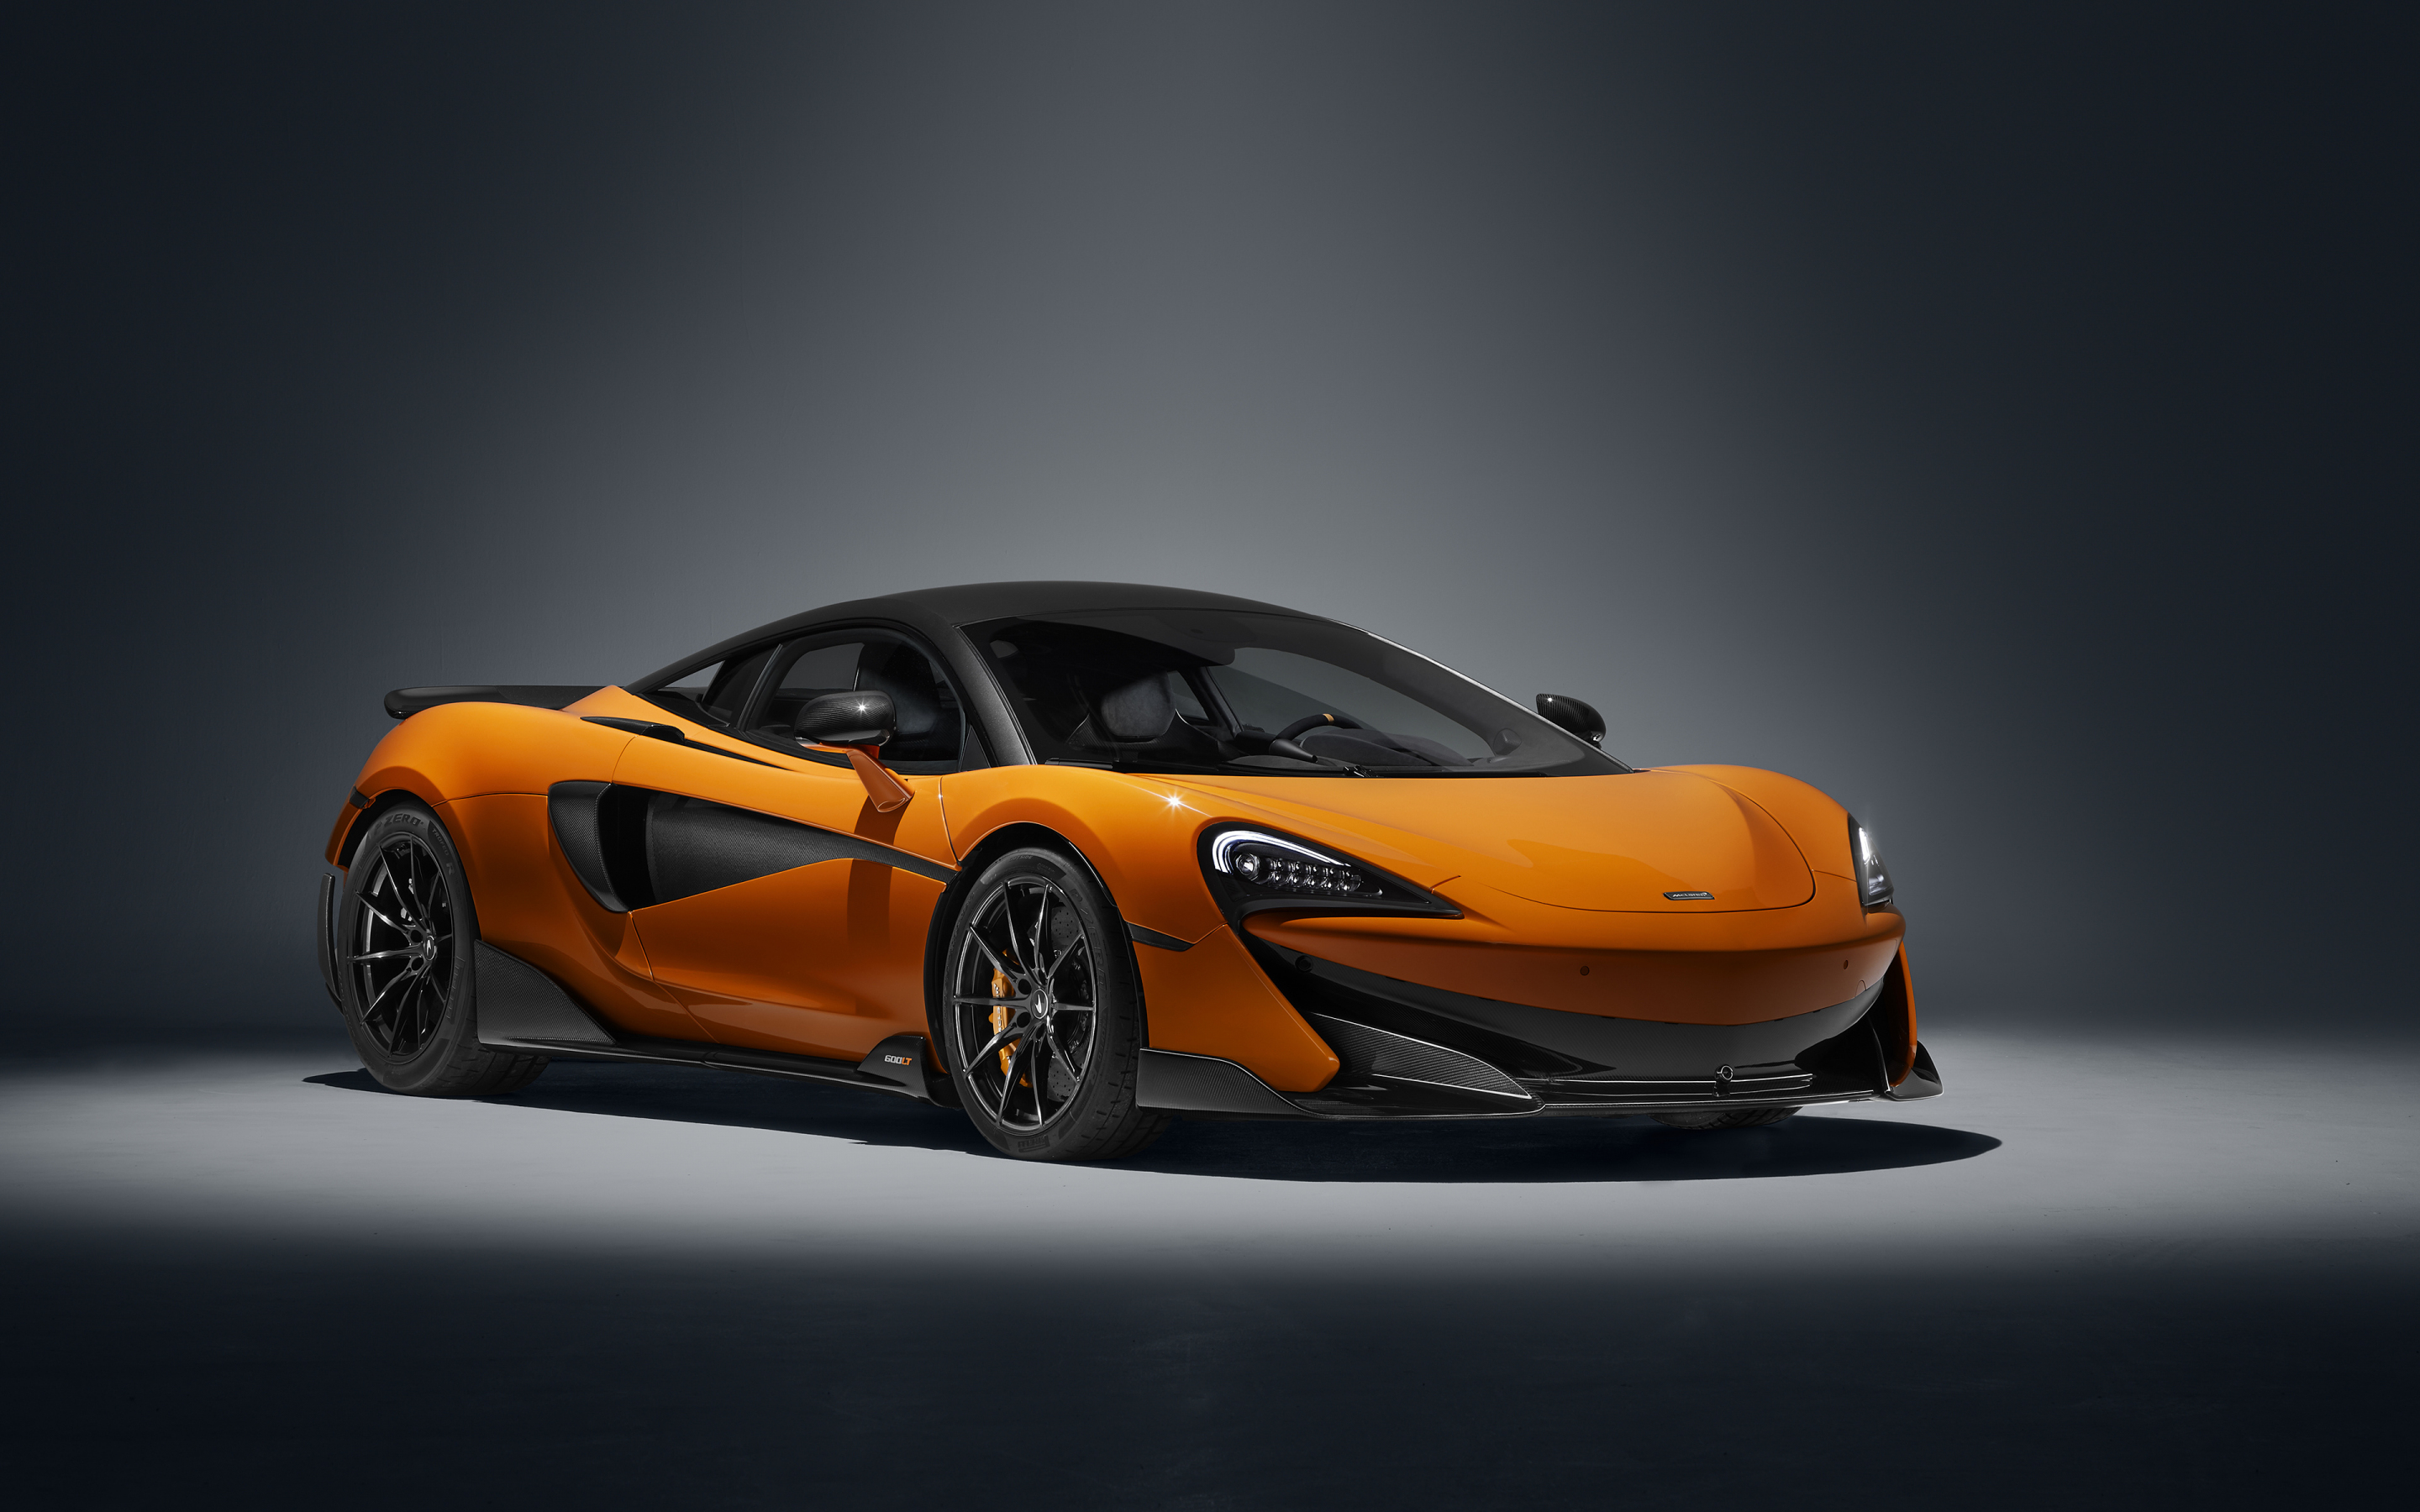 2019 McLaren 600LT, yellow, sports car, 2880x1800 wallpaper